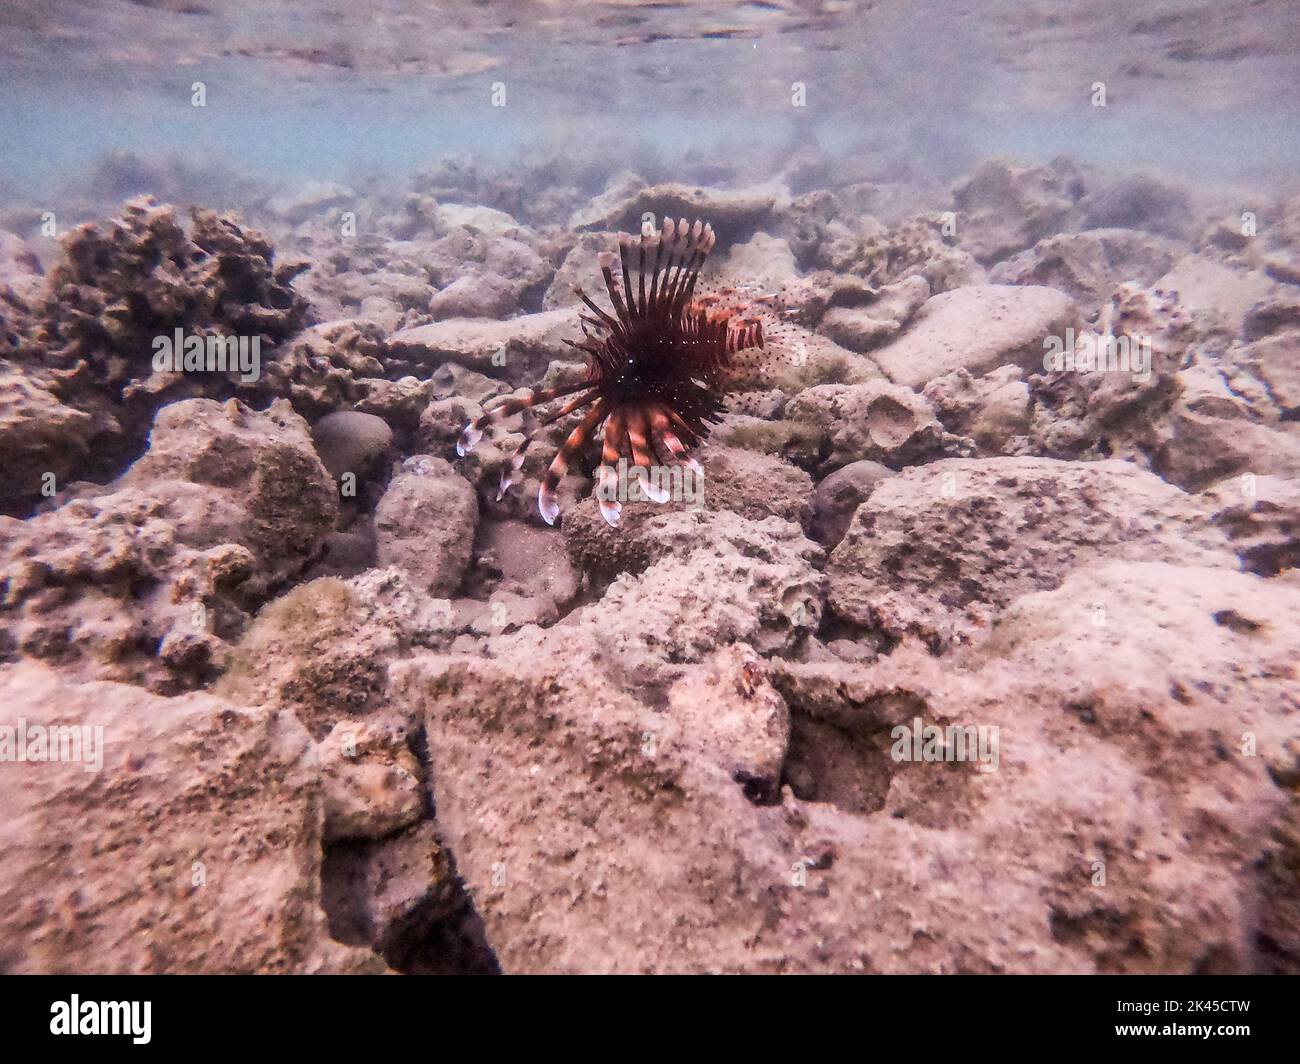 Le diable tropical exotique ou lionfish commun connu sous le nom de Pterois Miles sous l'eau au récif de corail. Vie sous-marine de récif avec coraux et tropica Banque D'Images